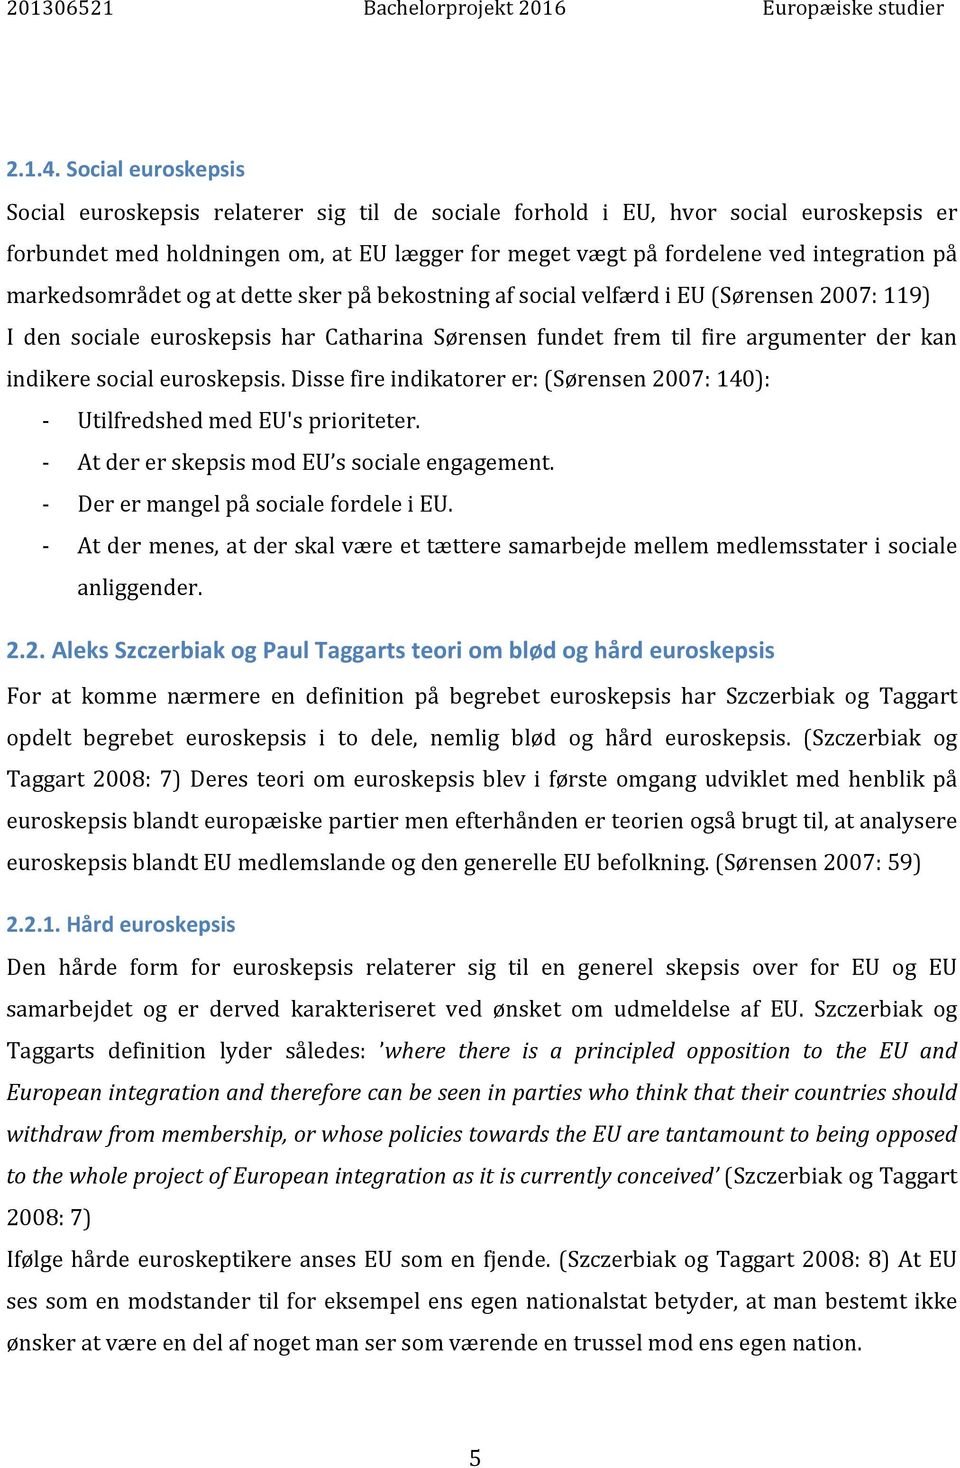 markedsområdet og at dette sker på bekostning af social velfærd i EU (Sørensen 2007: 119) I den sociale euroskepsis har Catharina Sørensen fundet frem til fire argumenter der kan indikere social